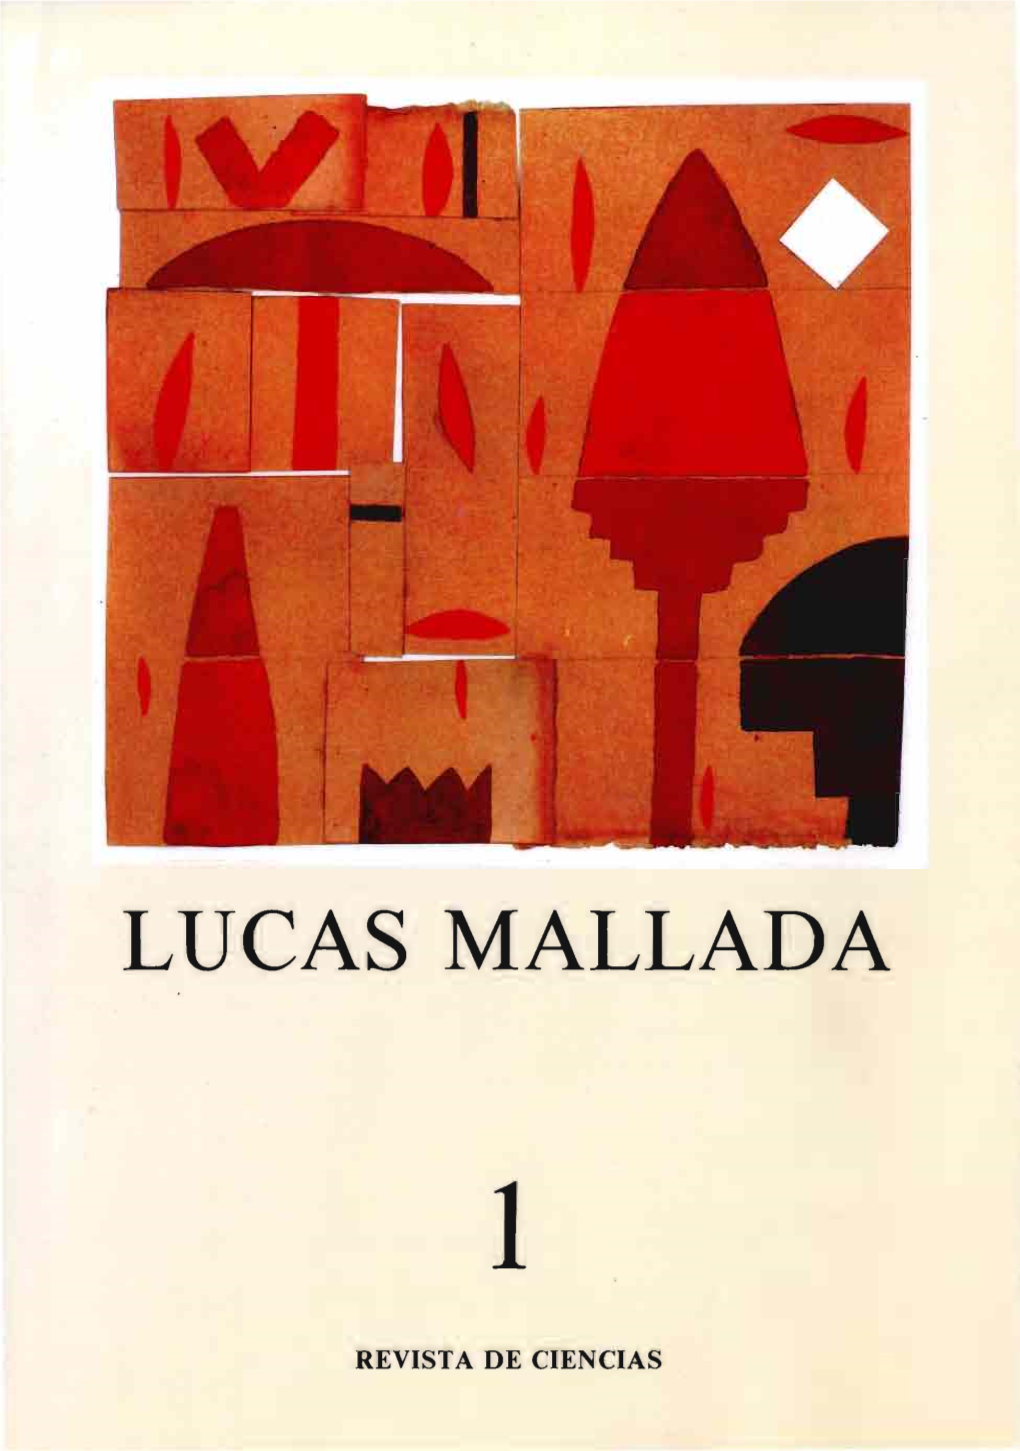 Lucas Mallada